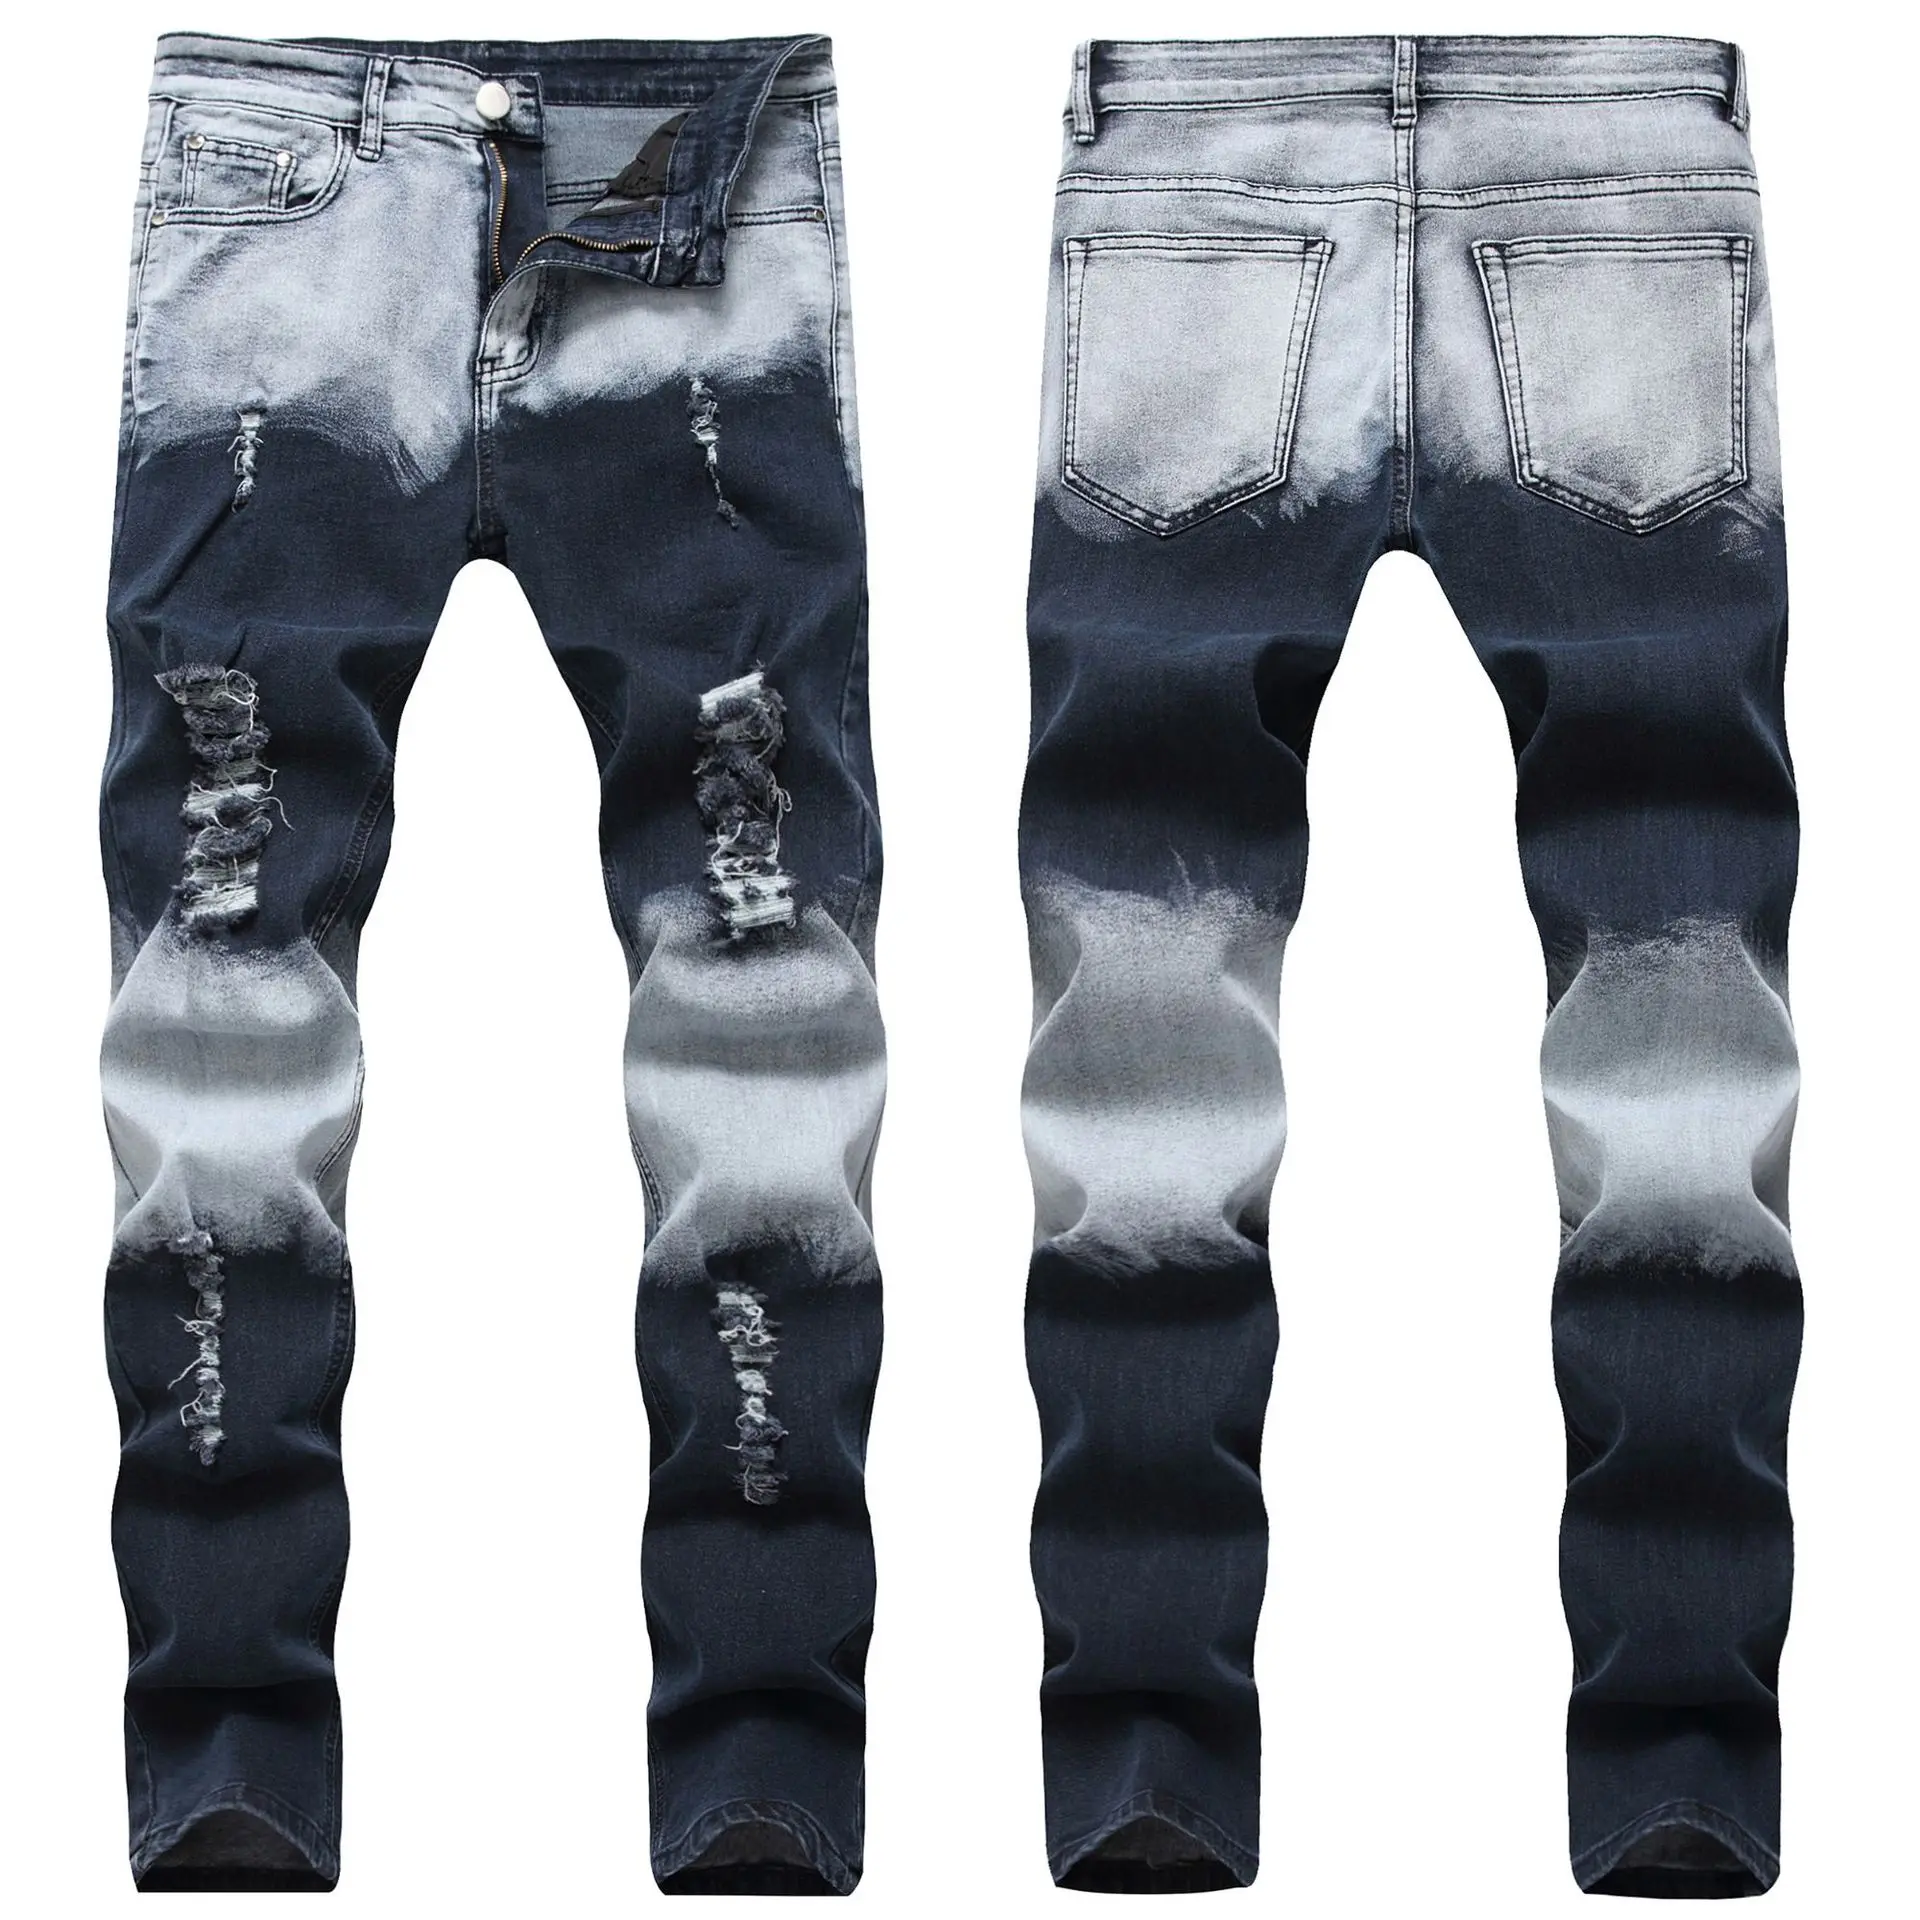 Pantalon Cintura Alta Denim Fabric Material Mens Distressed Jeans - Buy ...